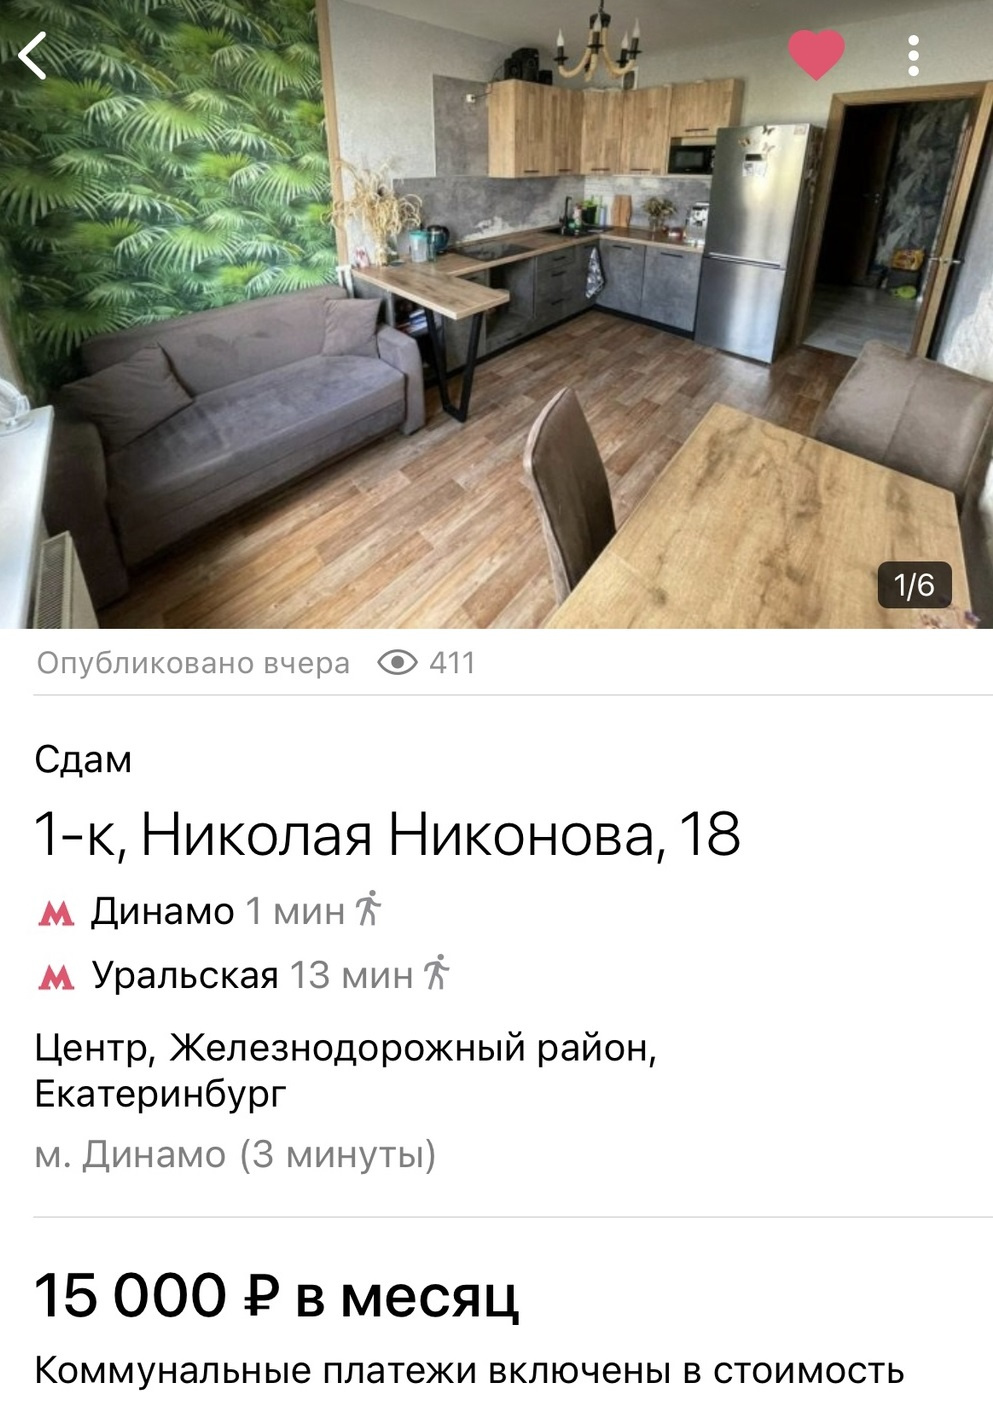 За 15 тысяч рублей в месяц предлагали полностью меблированную квартиру